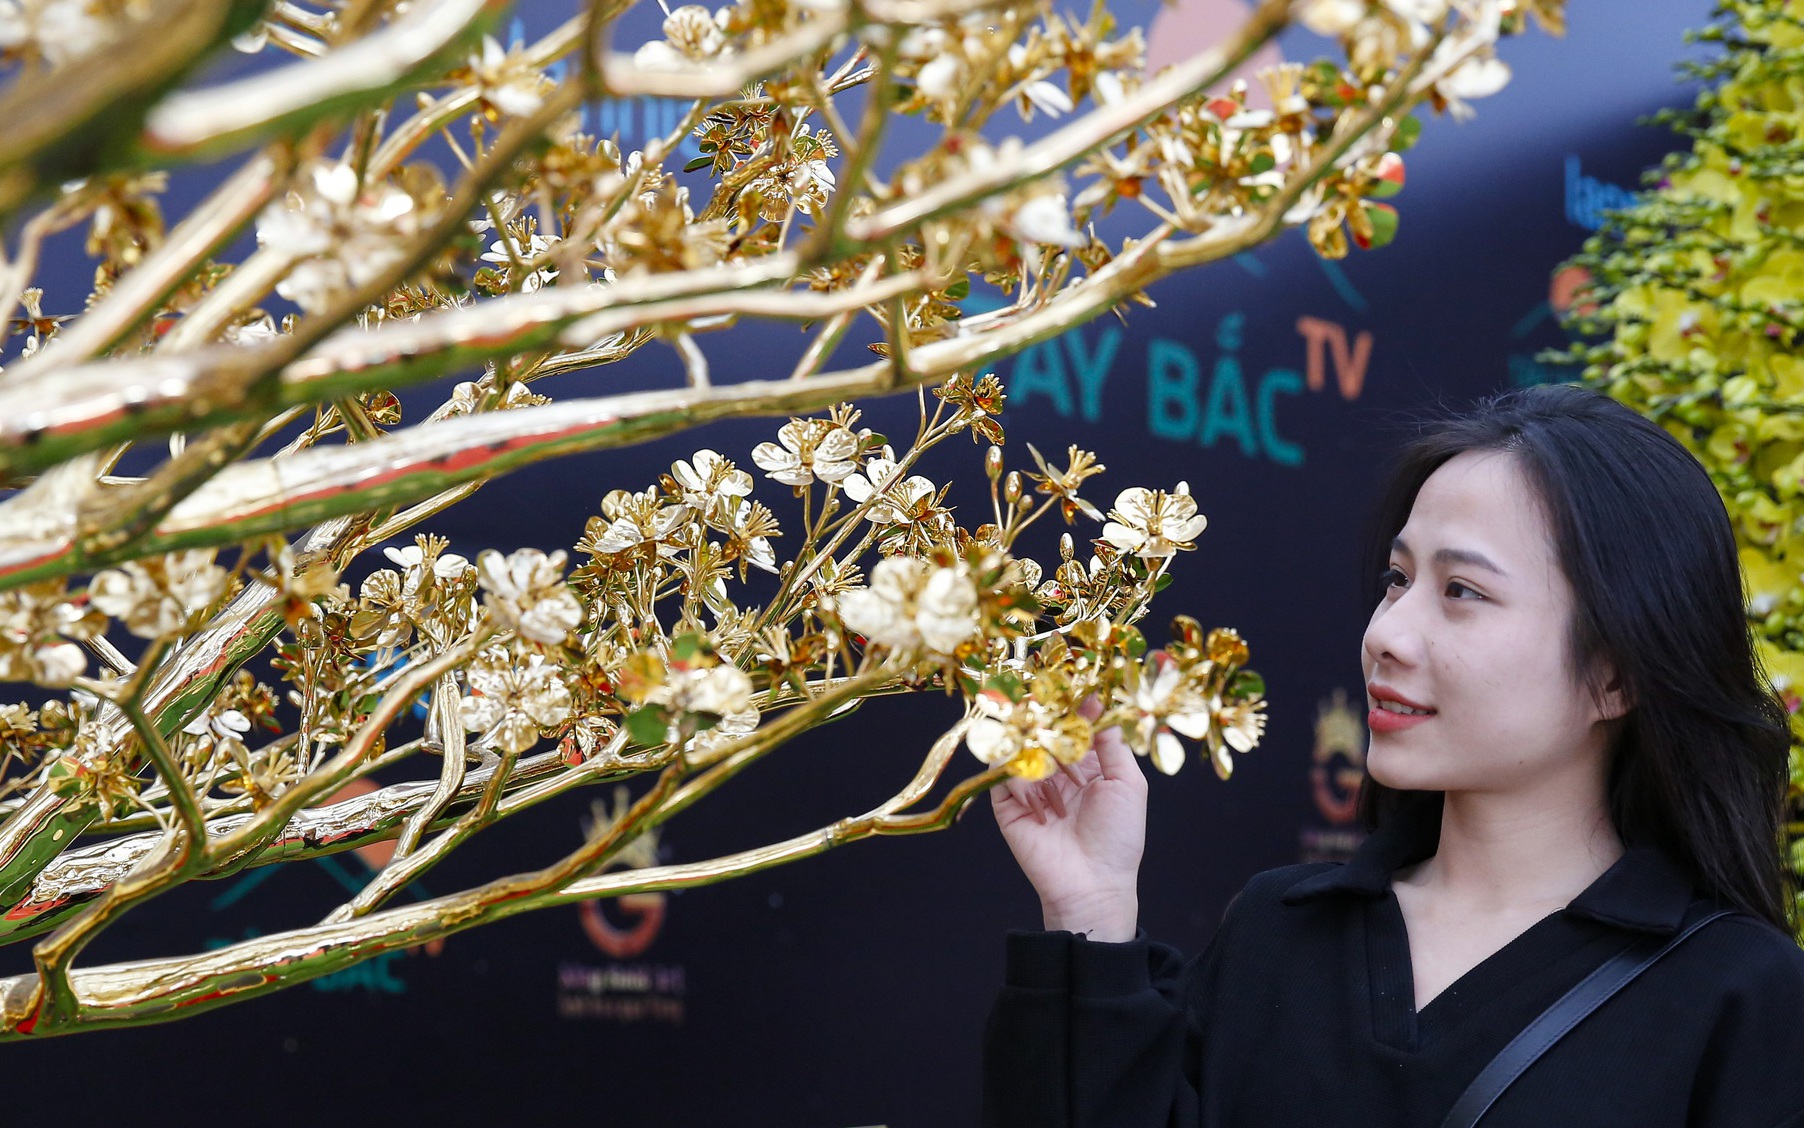 Ngắm cây mai mạ vàng 24k lớn nhất Việt Nam được chào bán 5,5 tỷ đồng tại Hà Nội